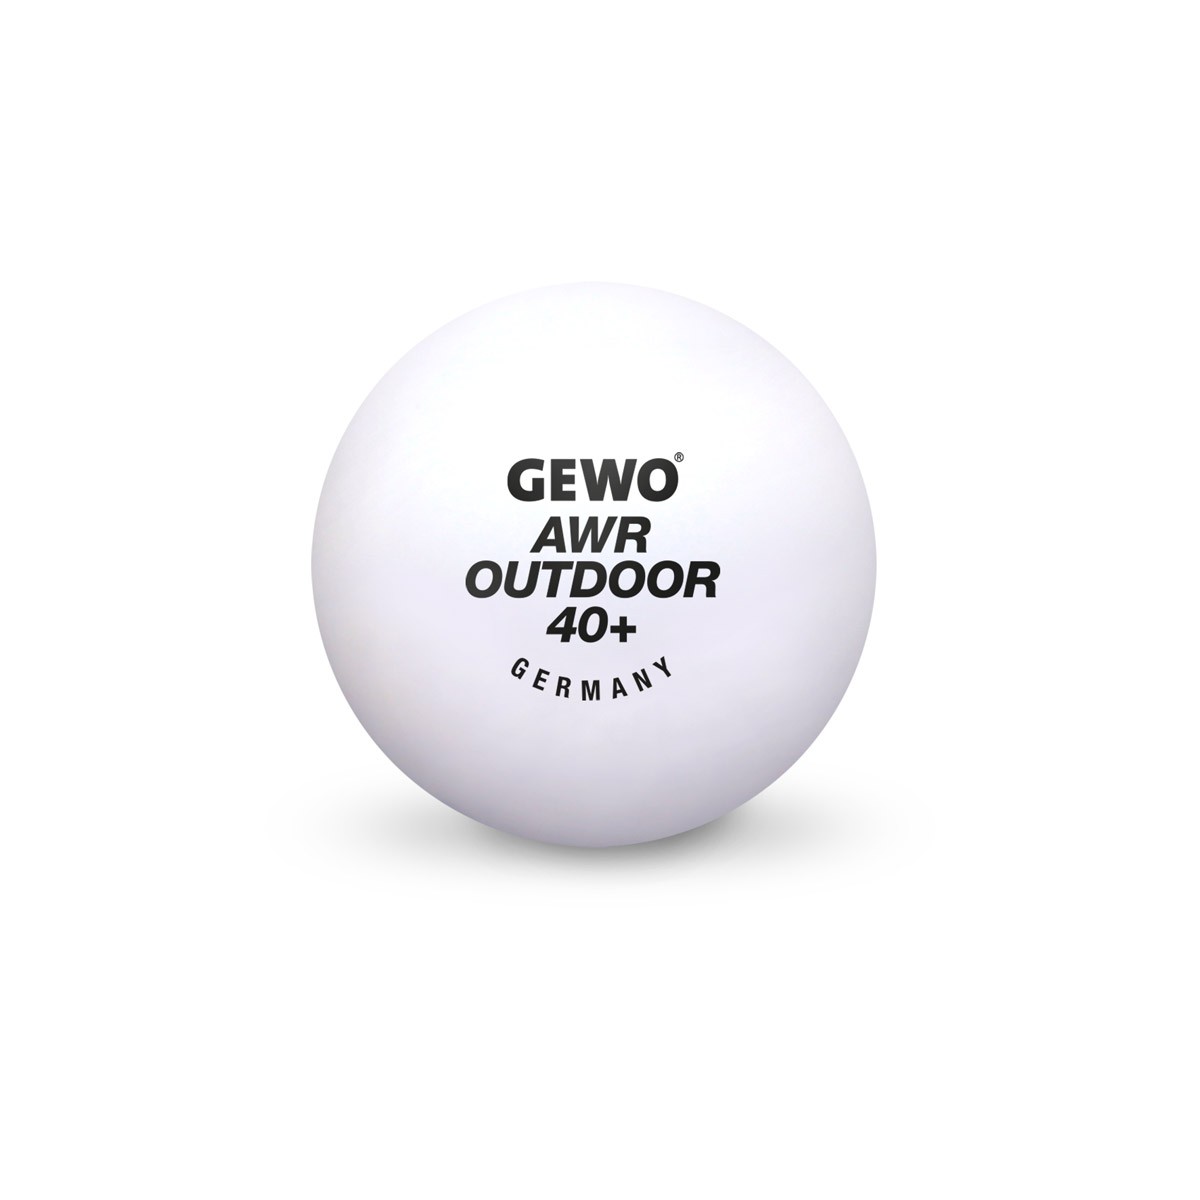 GEWO Ball AWR Outdoor 40+ 6er weiß